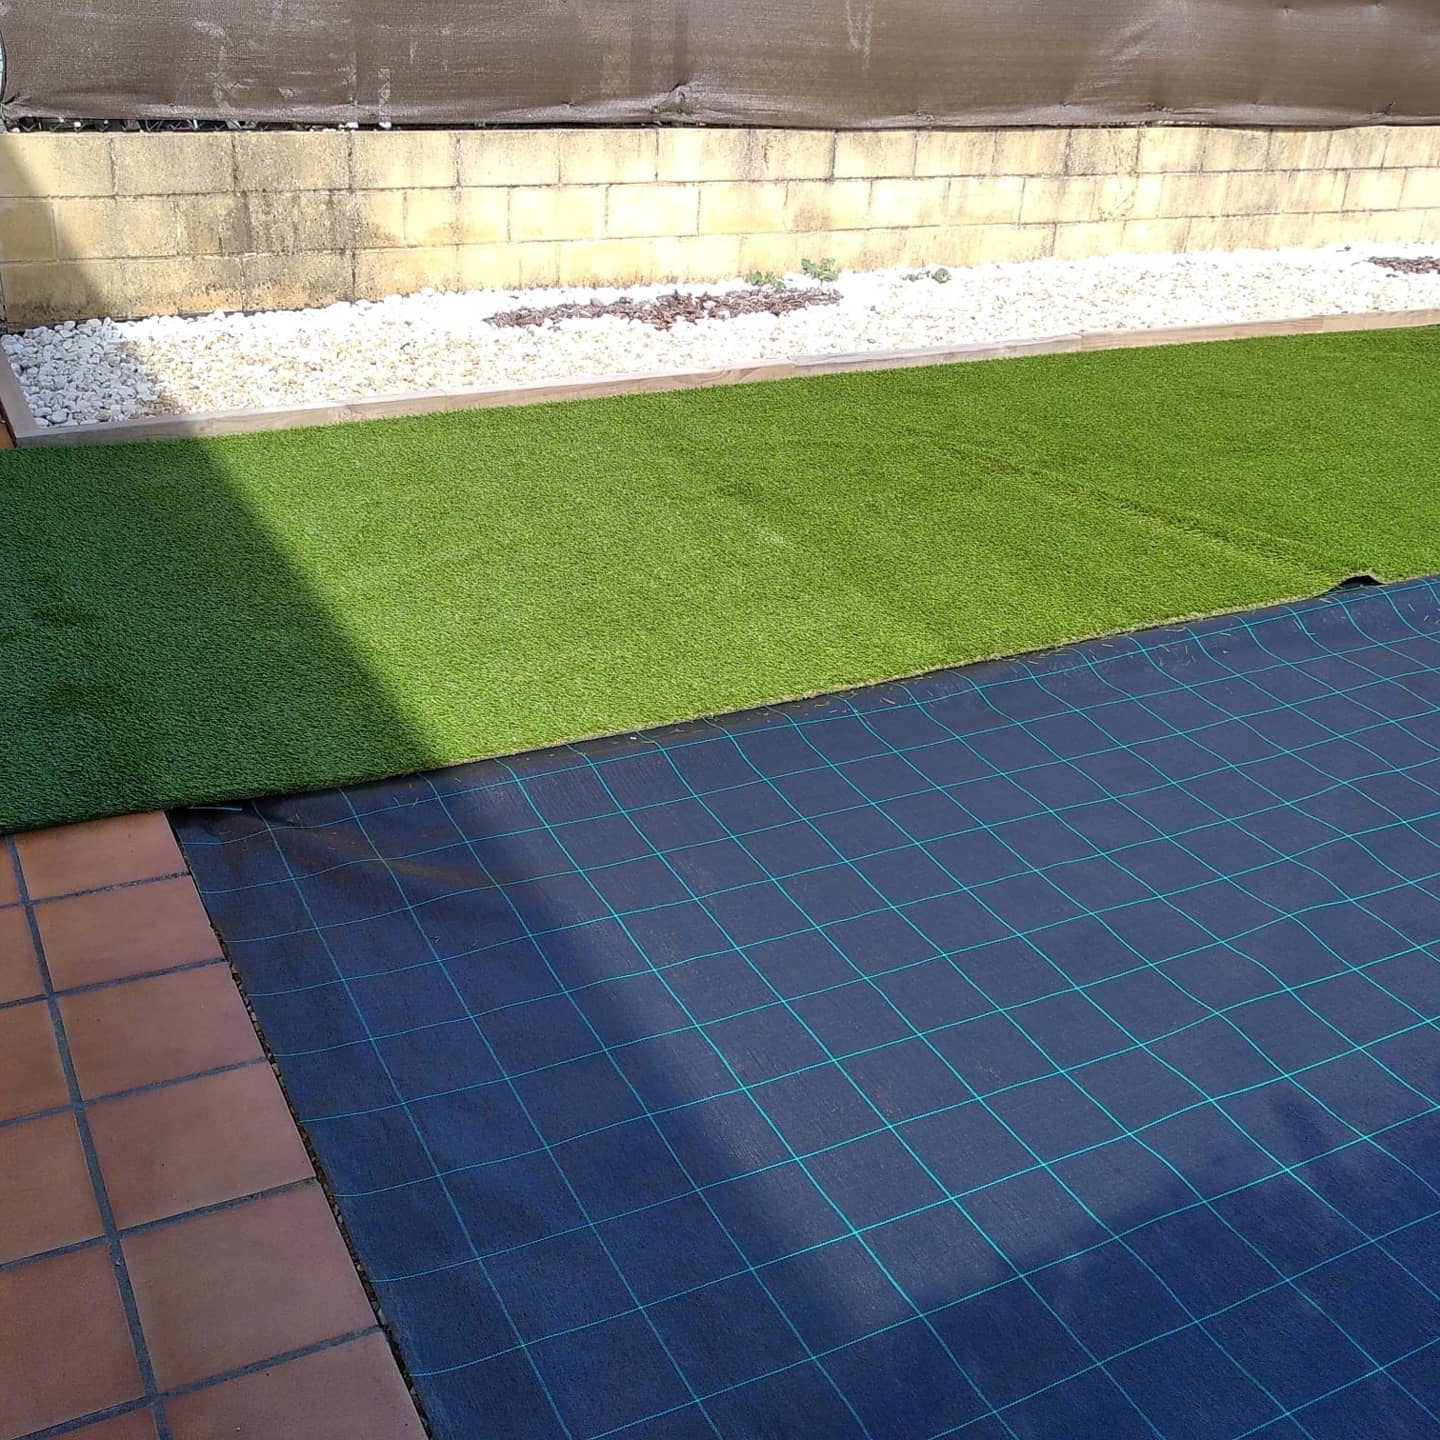 Instalación de césped artificial | Viveros Viver Jardín, tu vivero en León. Diseño y jardines la máxima calidad y profesionalidad.